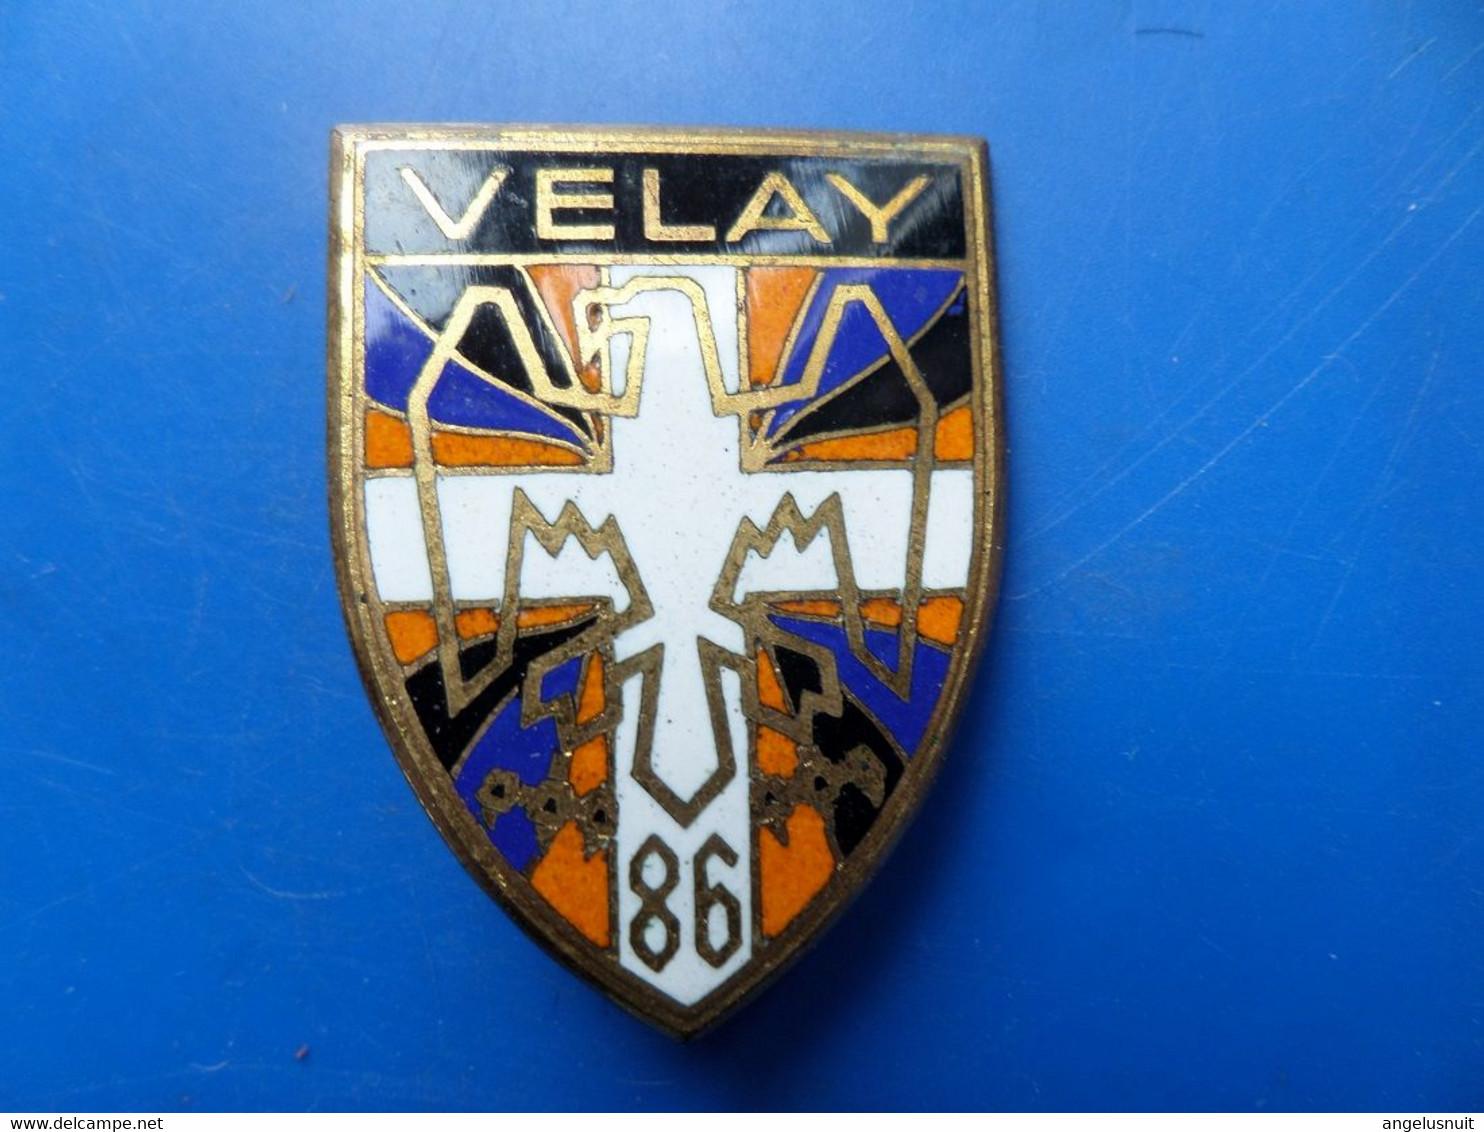 86 regiment subdivisionnaire velay